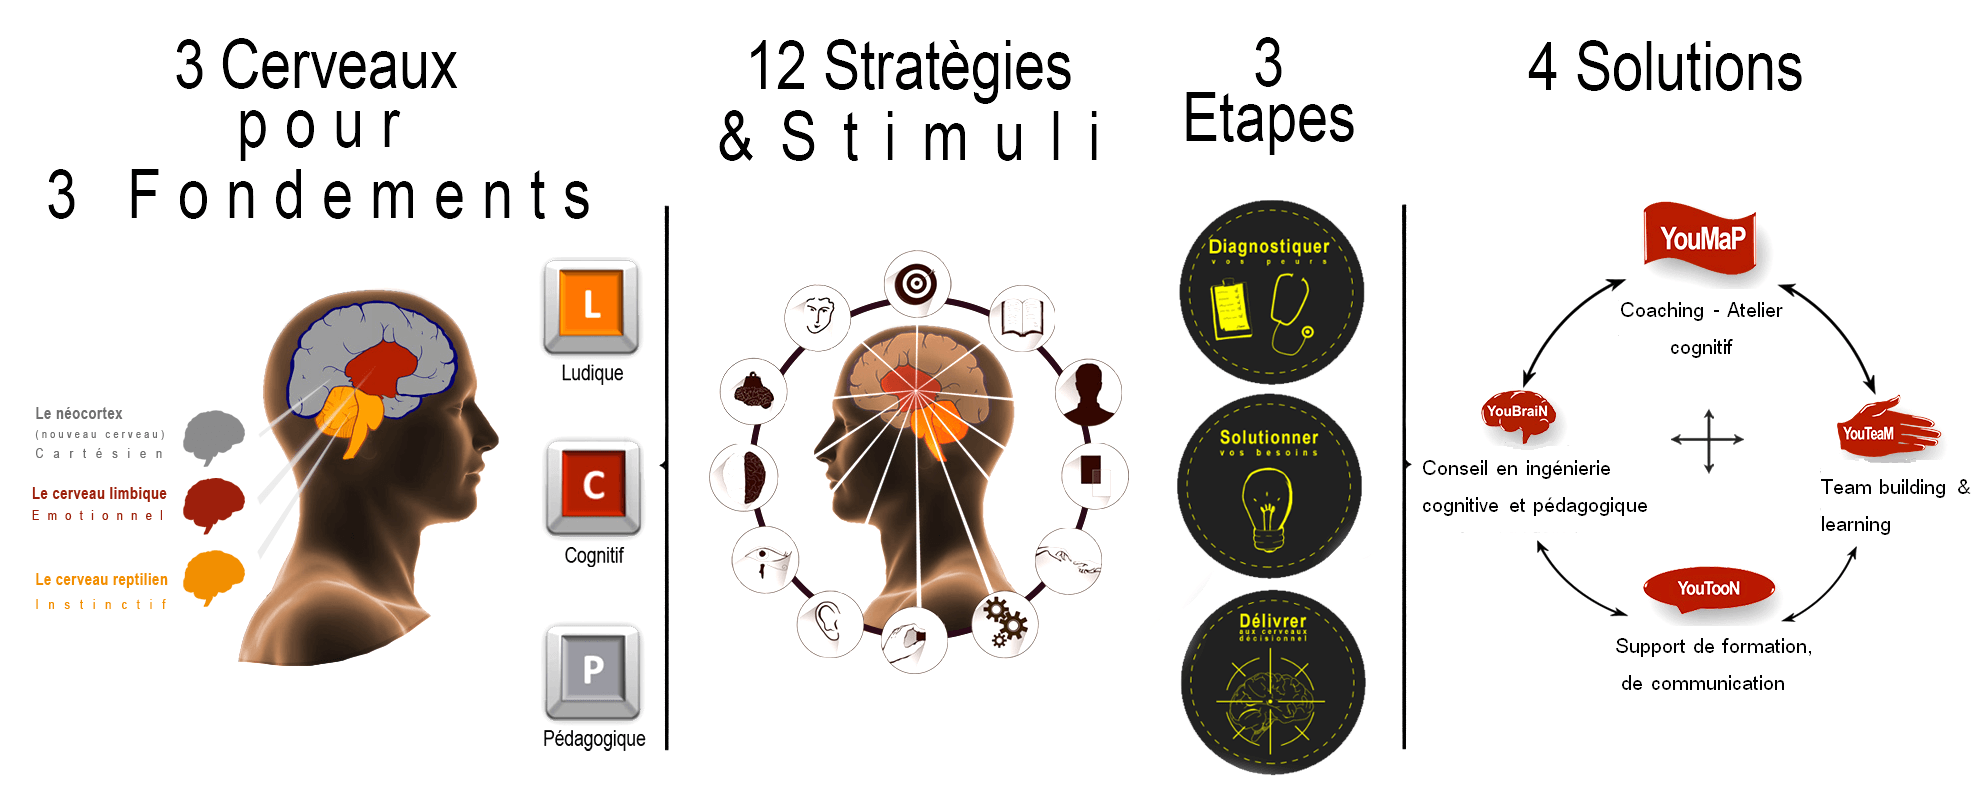 3 cerveaux pour 3 fondements stratégies étapes solutions 2016 4